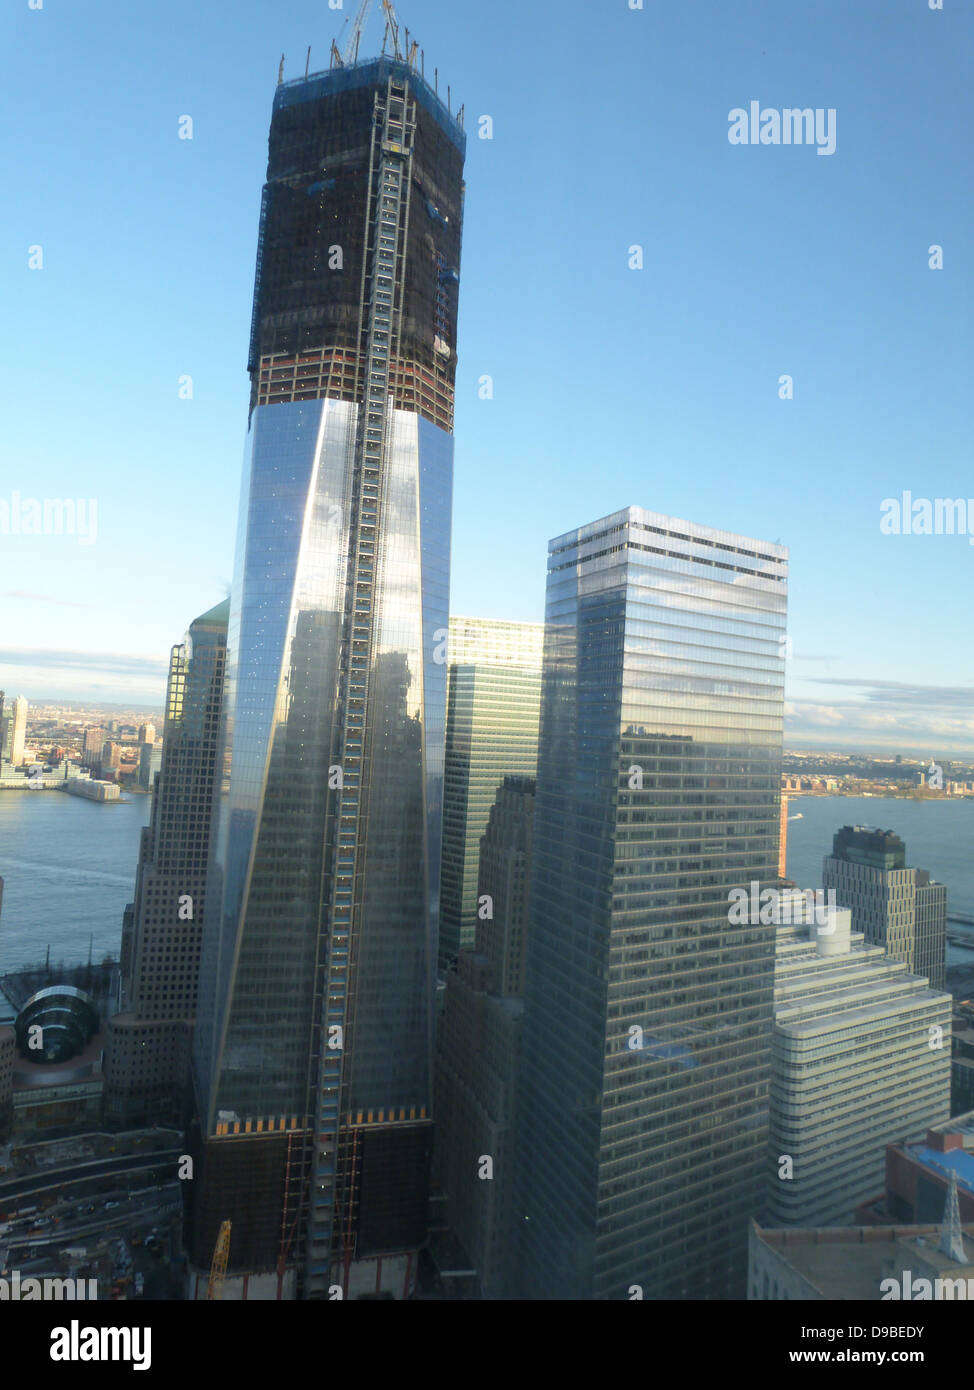 Avril 2012 (à gauche) et One World Trade Center (à droite) Le nouveau World Trade Center 7, bâtiment reconstruit aftre l'attaque terroriste sur le World Trade Center, au Ground Zero, New York, en septembre 2011. Banque D'Images